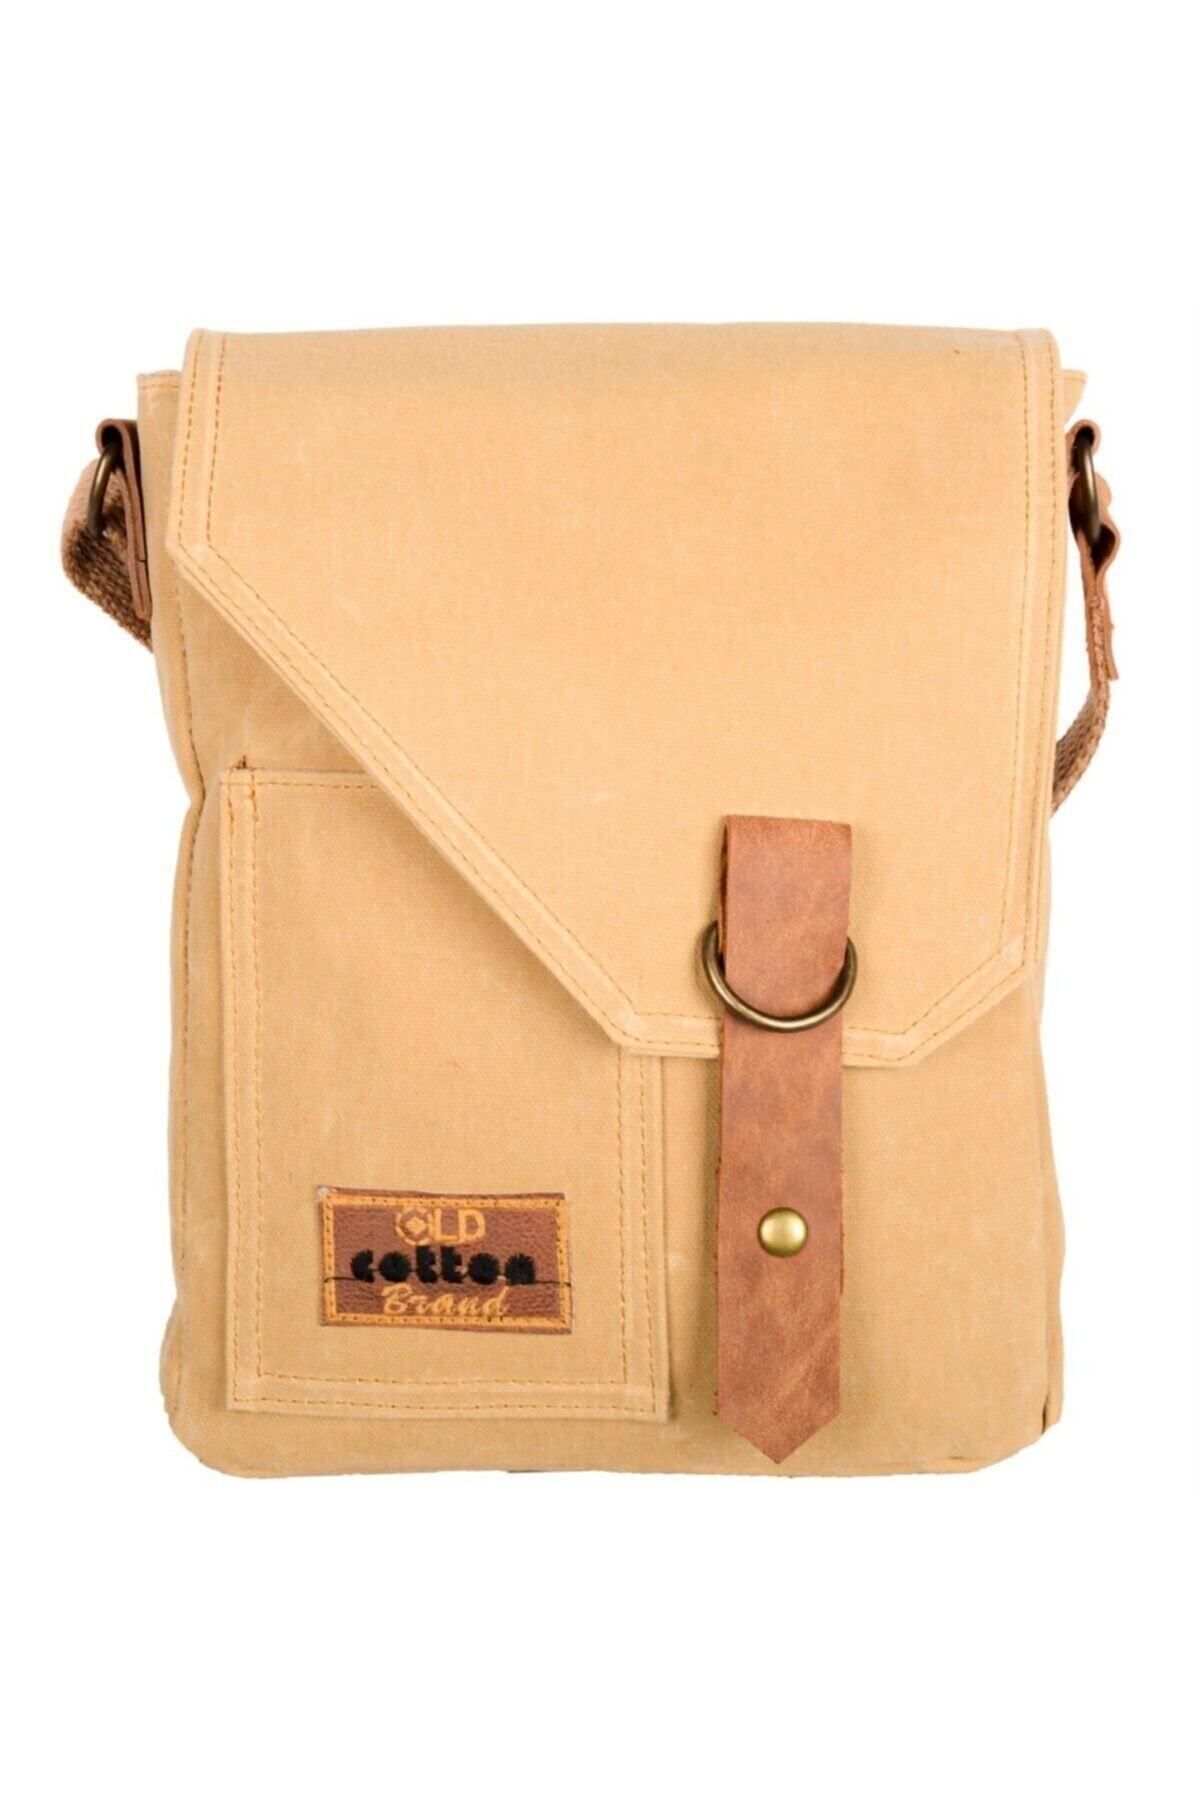 Old Cotton Cargo Unisex Pretty Bag Omuz Çantası 7059 S Camel Renk